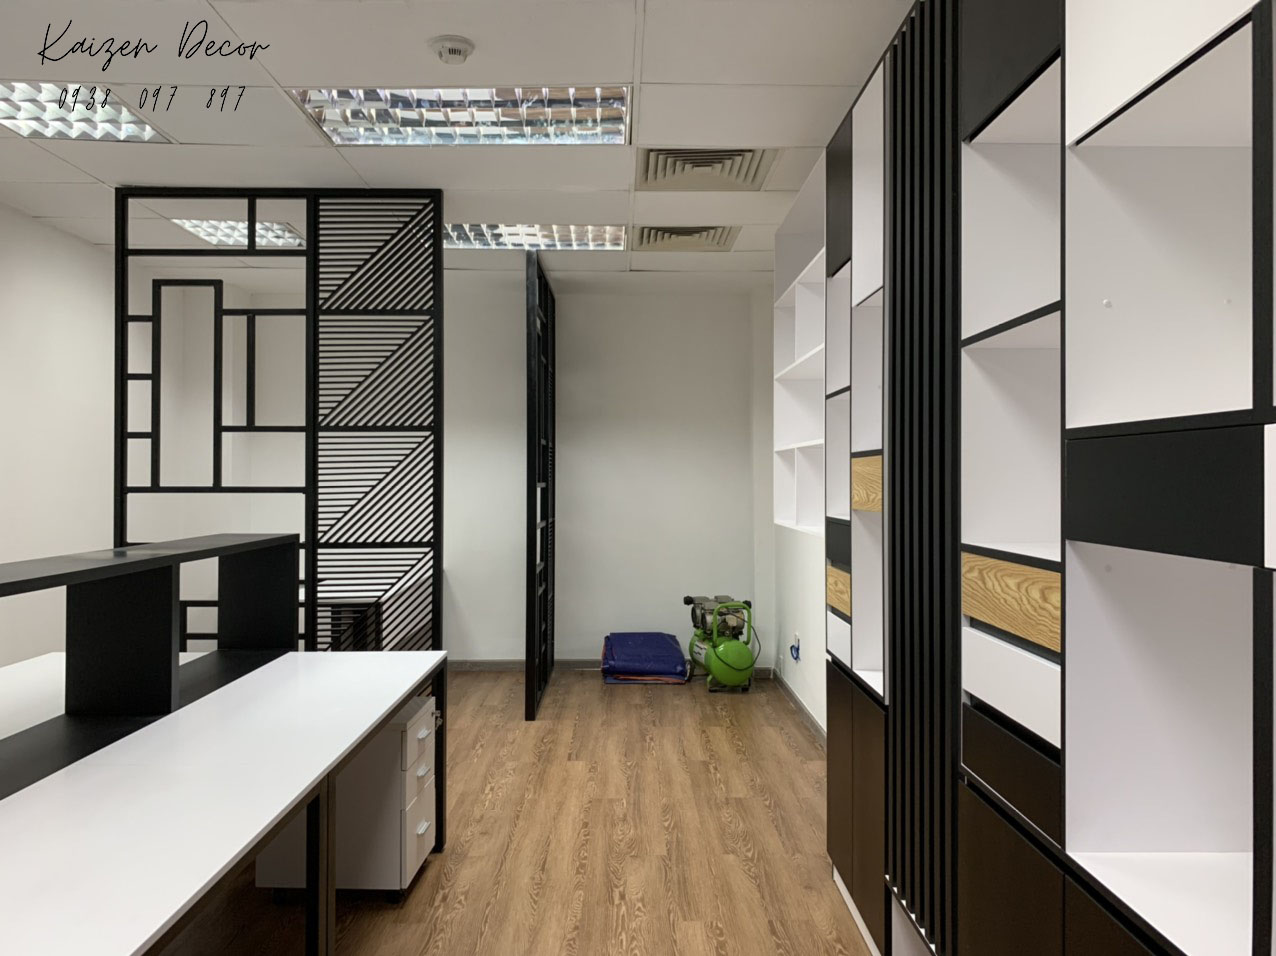 Thi công nội thất văn phòng:
Một không gian làm việc chuyên nghiệp không chỉ mang lại lợi ích cho bản thân mà còn tạo cảm hứng cho các nhân viên làm việc. Vì vậy, hãy để chúng tôi giúp bạn thi công nội thất văn phòng để tạo ra một môi trường làm việc thoải mái, tiện nghi và phong cách.